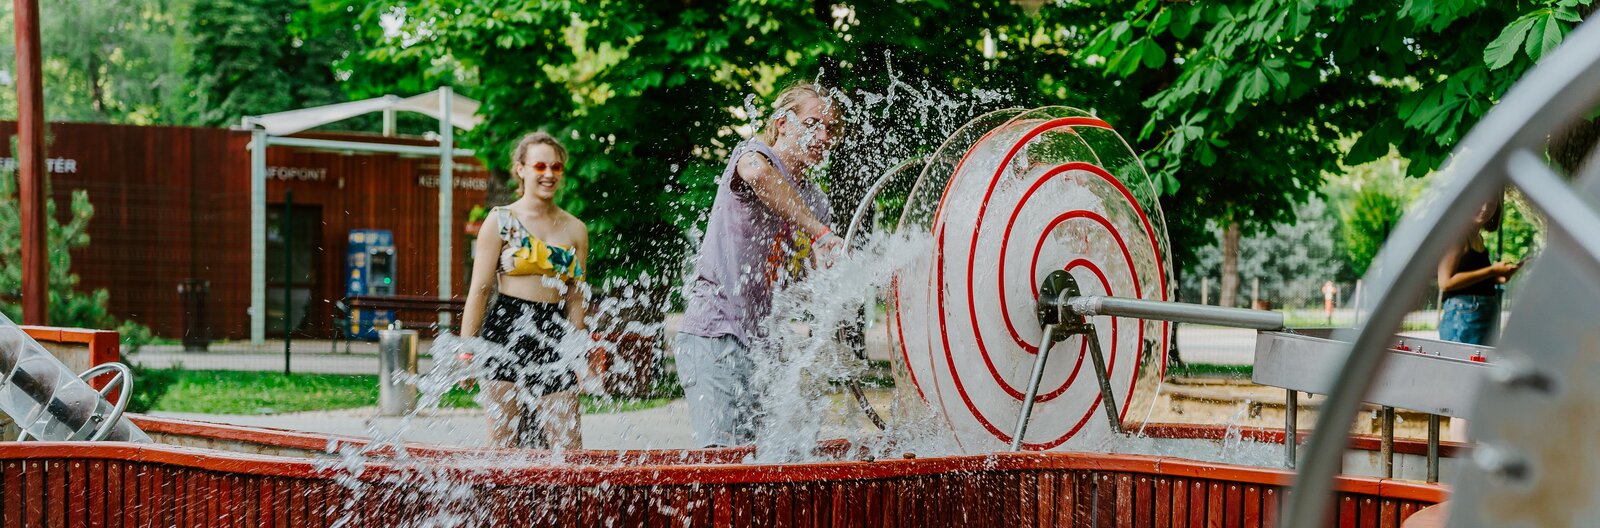 A vizes játszóterektől az óriáscsúszdákon át a balatoni legendákig – A gyerekek kedvencei a Balaton északi partján